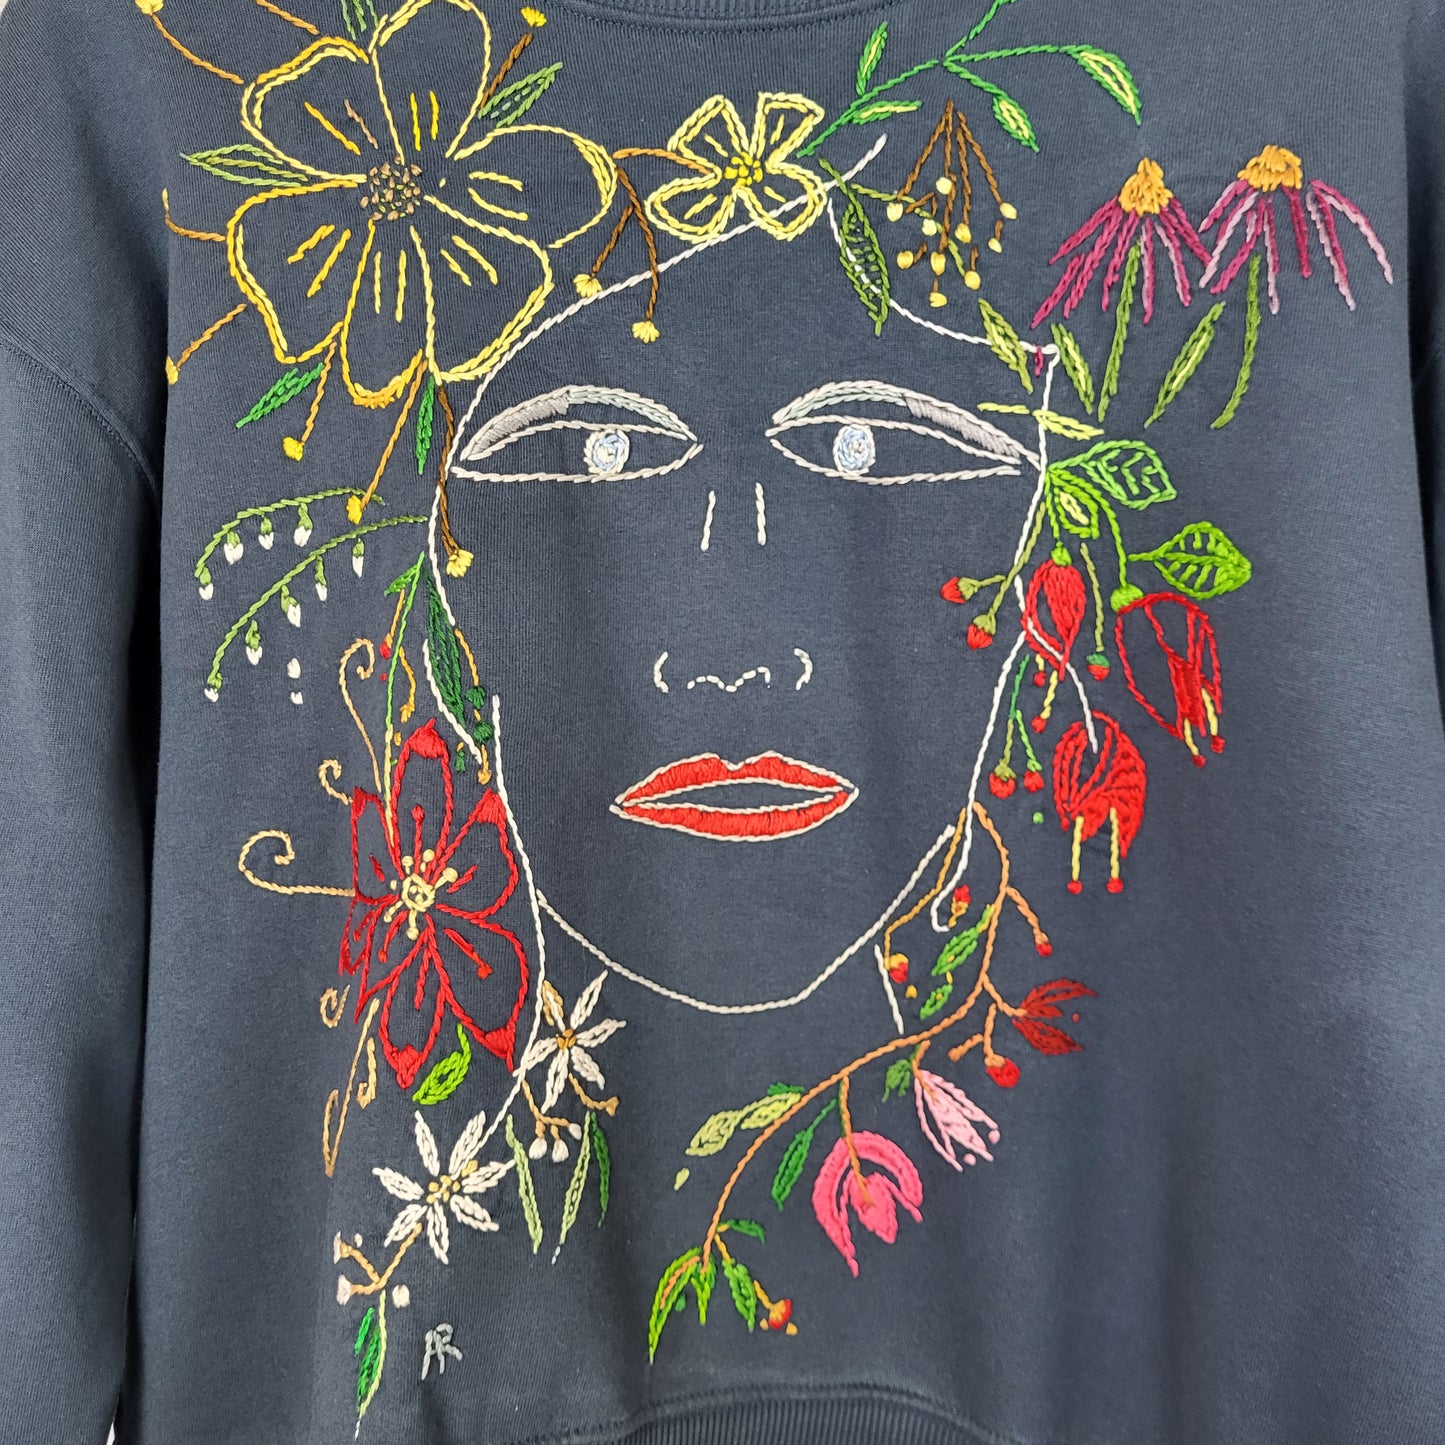 Anne Marie Roth, Stickerei, Kunst, Künstlerin, Female Artist, Fashion, Berlin , Kunstmarkt, Unique Artwear, Designer Clothing, Blue Sweatshirt, Organic